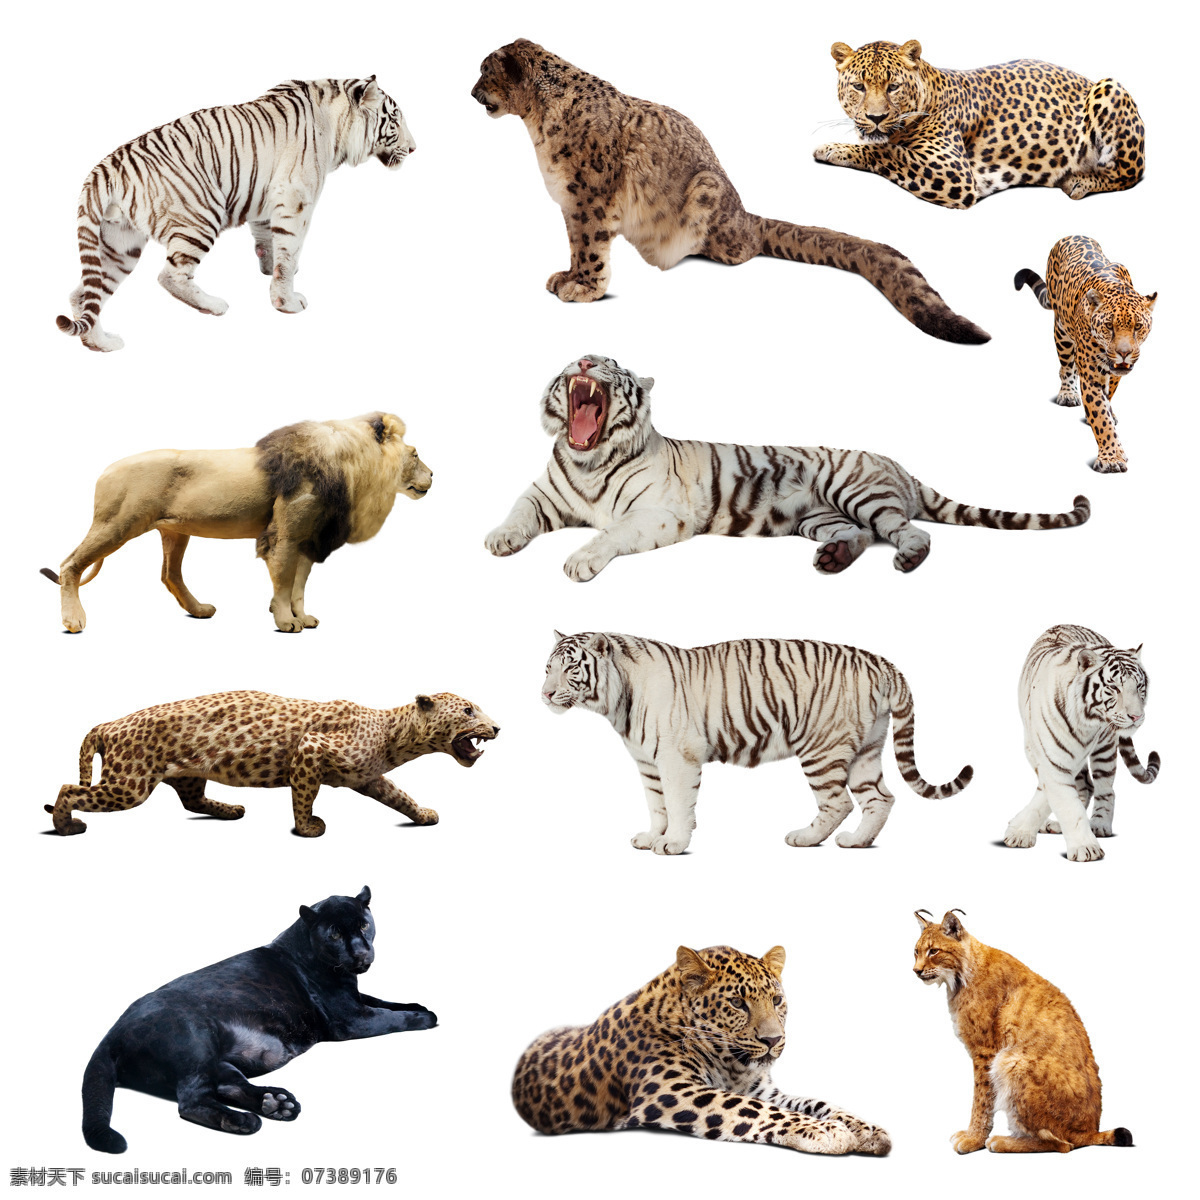 野生动物摄影 野生动物 动物世界 陆地动物 猛兽 老虎 豹子 动物摄影 生物世界 白色